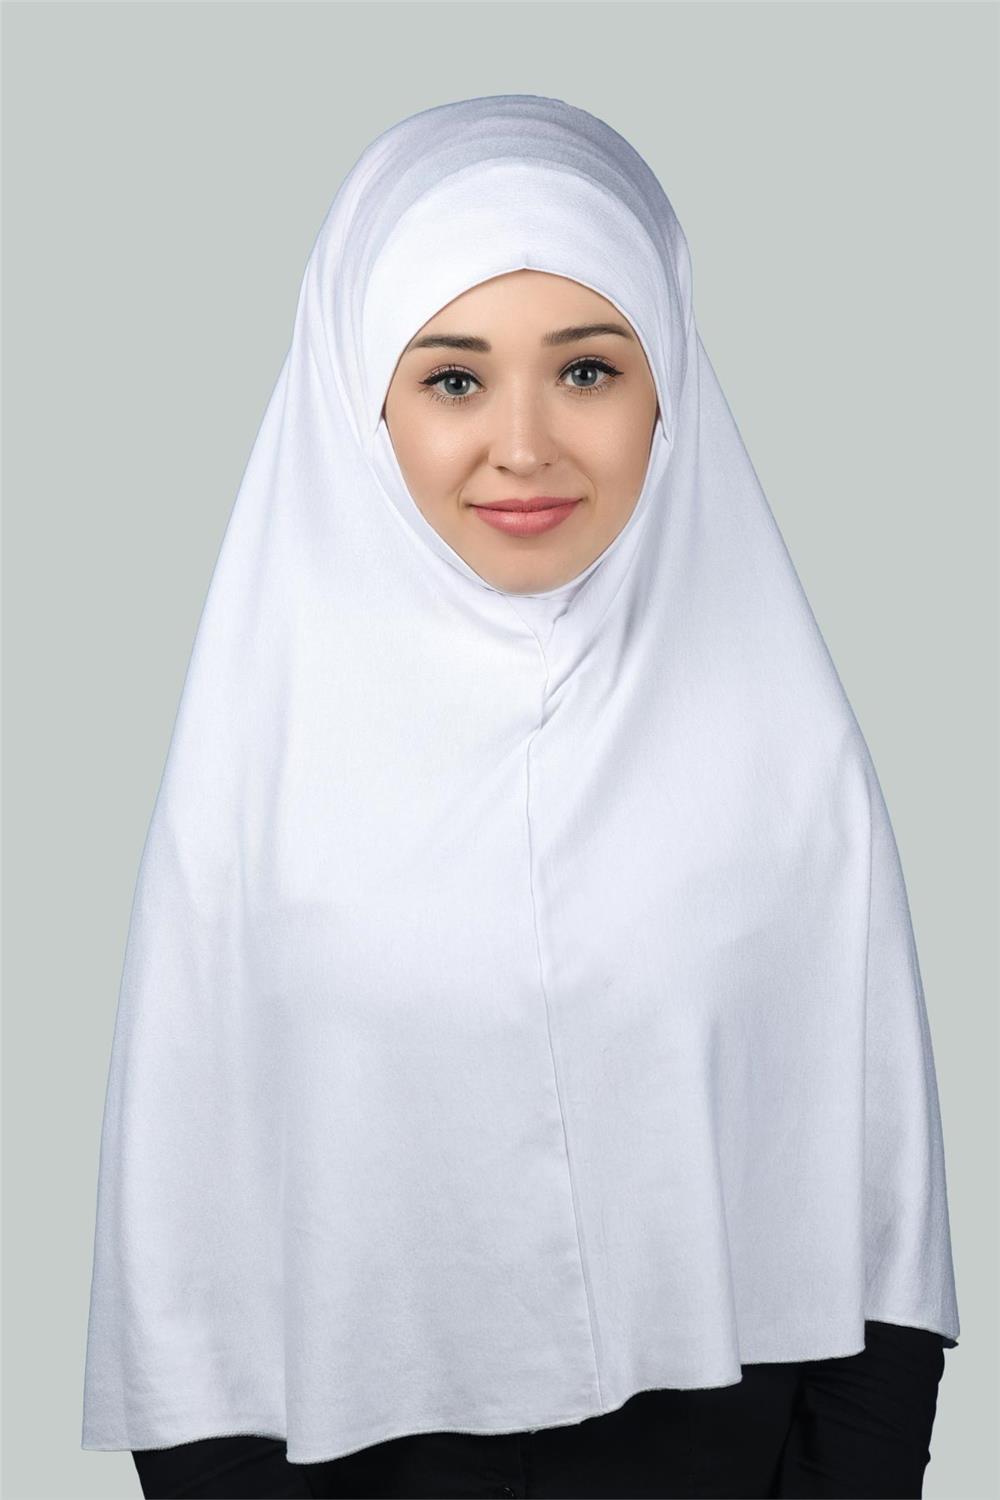 Hazır Türban Peçeli Pratik Eşarp Tesettür Nikaplı Hijab - Namaz Örtüsü  Sufle (3XL) - Beyaz